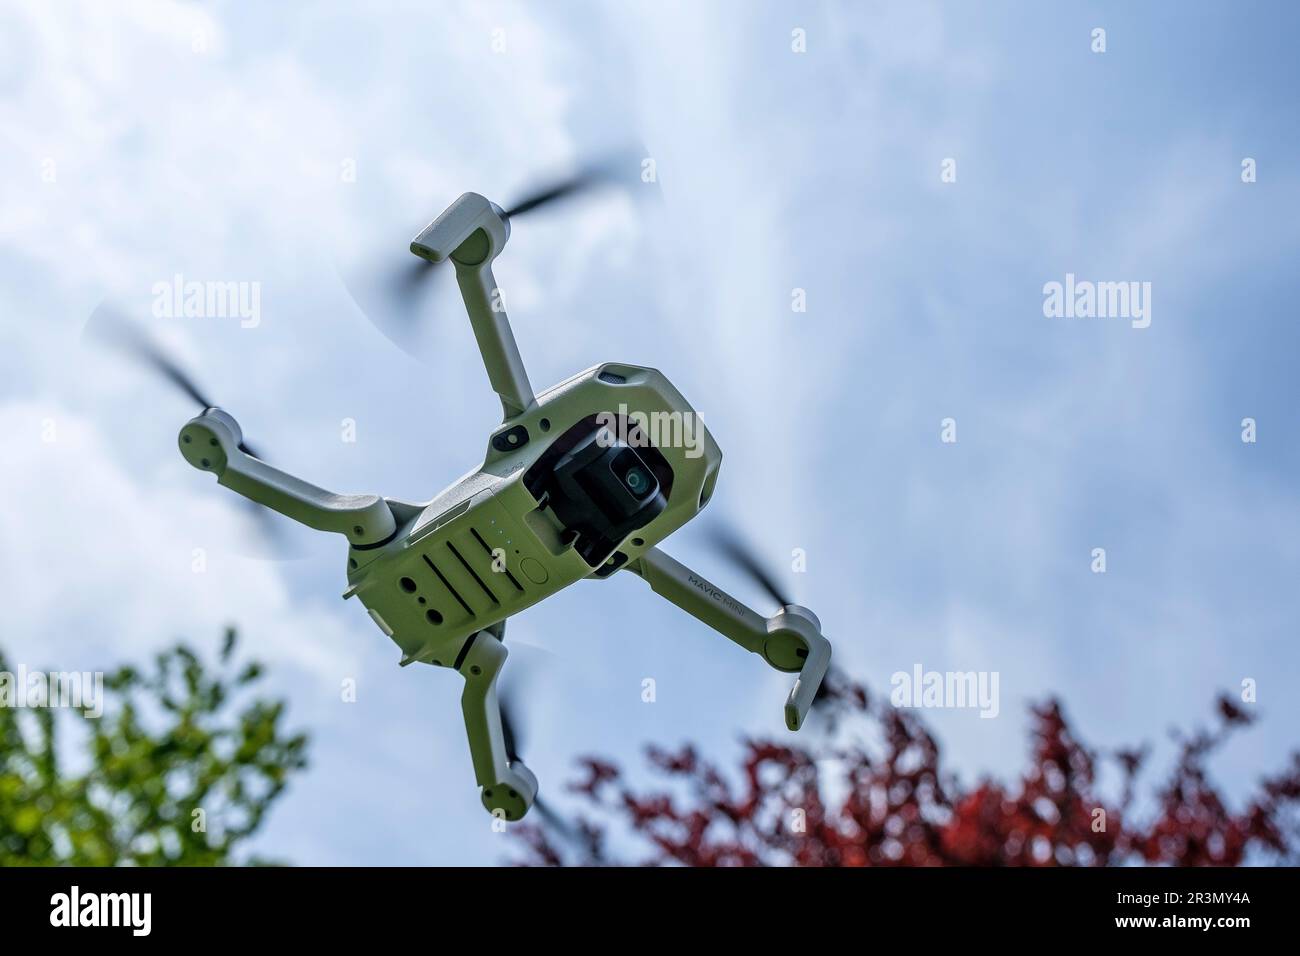 Drohne für die Allgemeinheit unter 250 Gramm - Keine Lizenz erforderlich | Drohne Grand public sous la Limite des 250 Gramm. Aucune Lizenz n'est requise Stockfoto